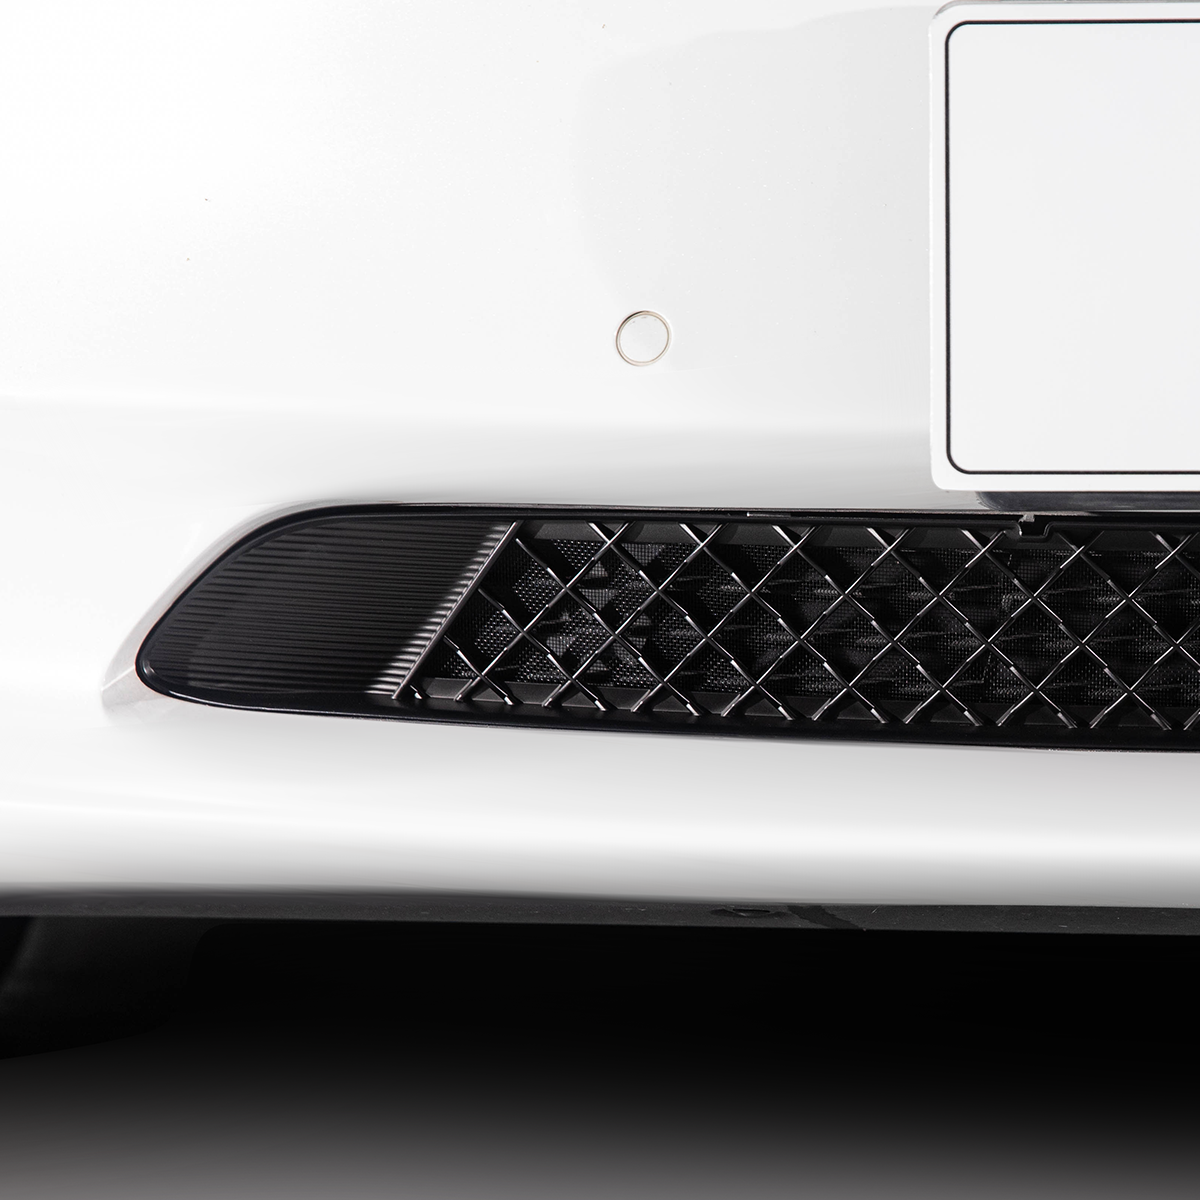 TPARTS Front Grille Mesh Radiator Cover Guard for Tesla Model 3/Y Model Y TP216